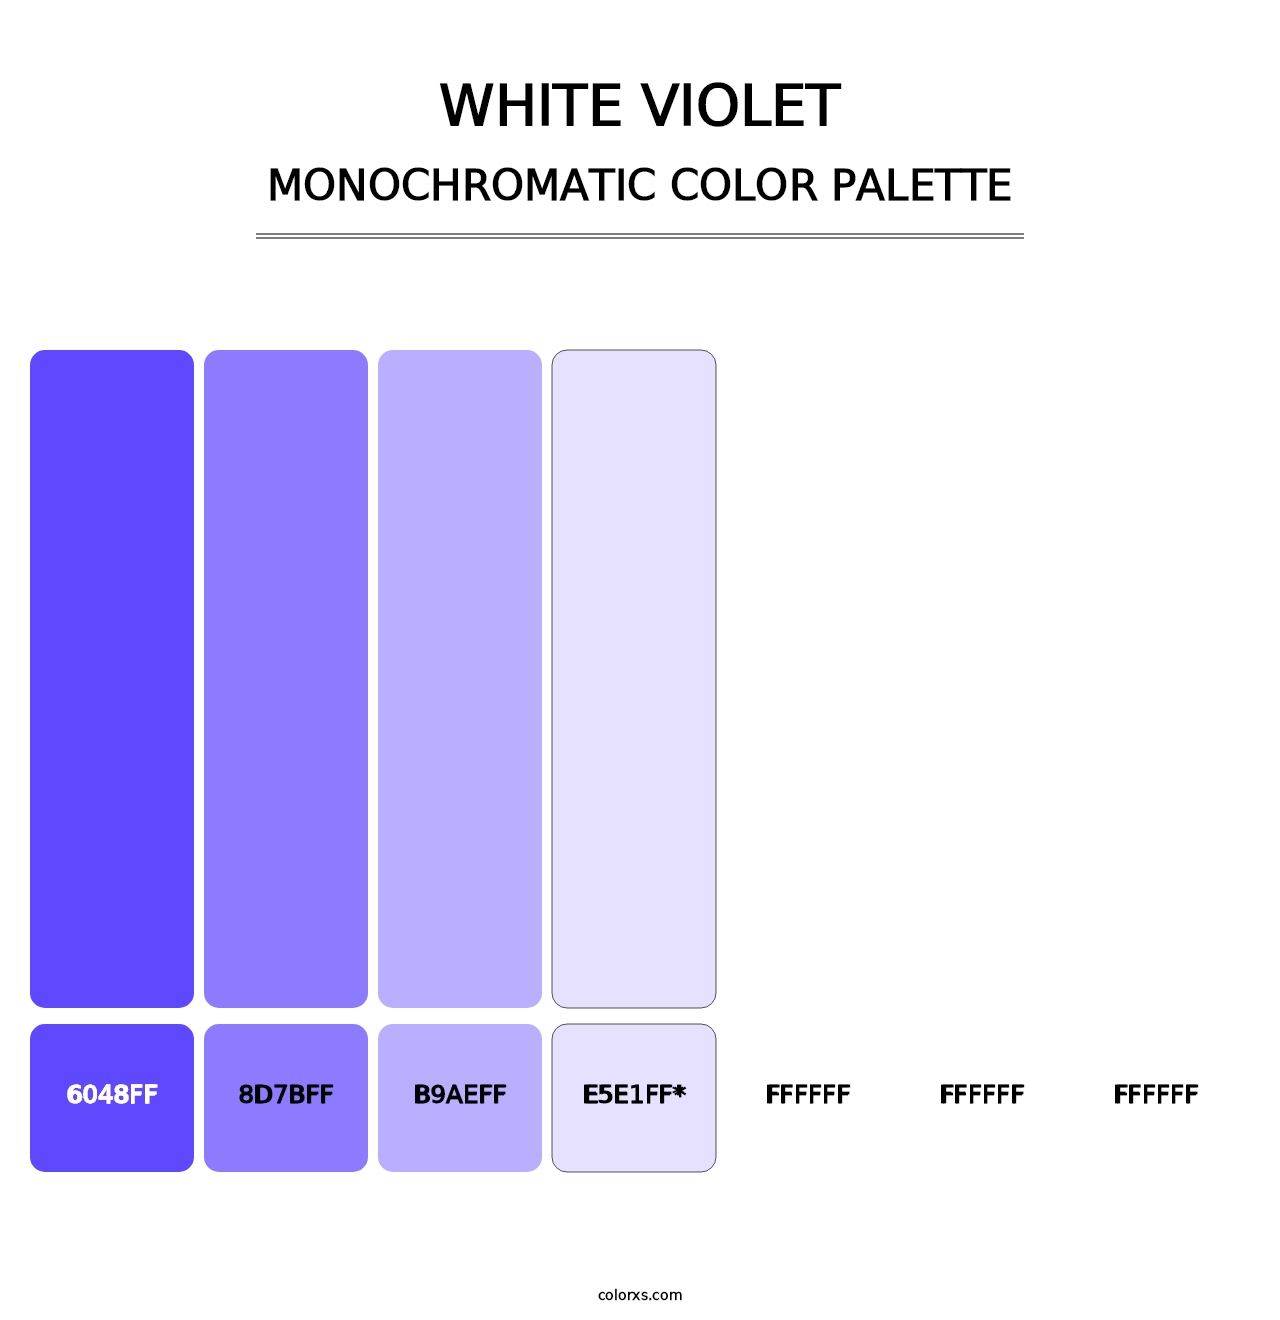 White Violet - Monochromatic Color Palette